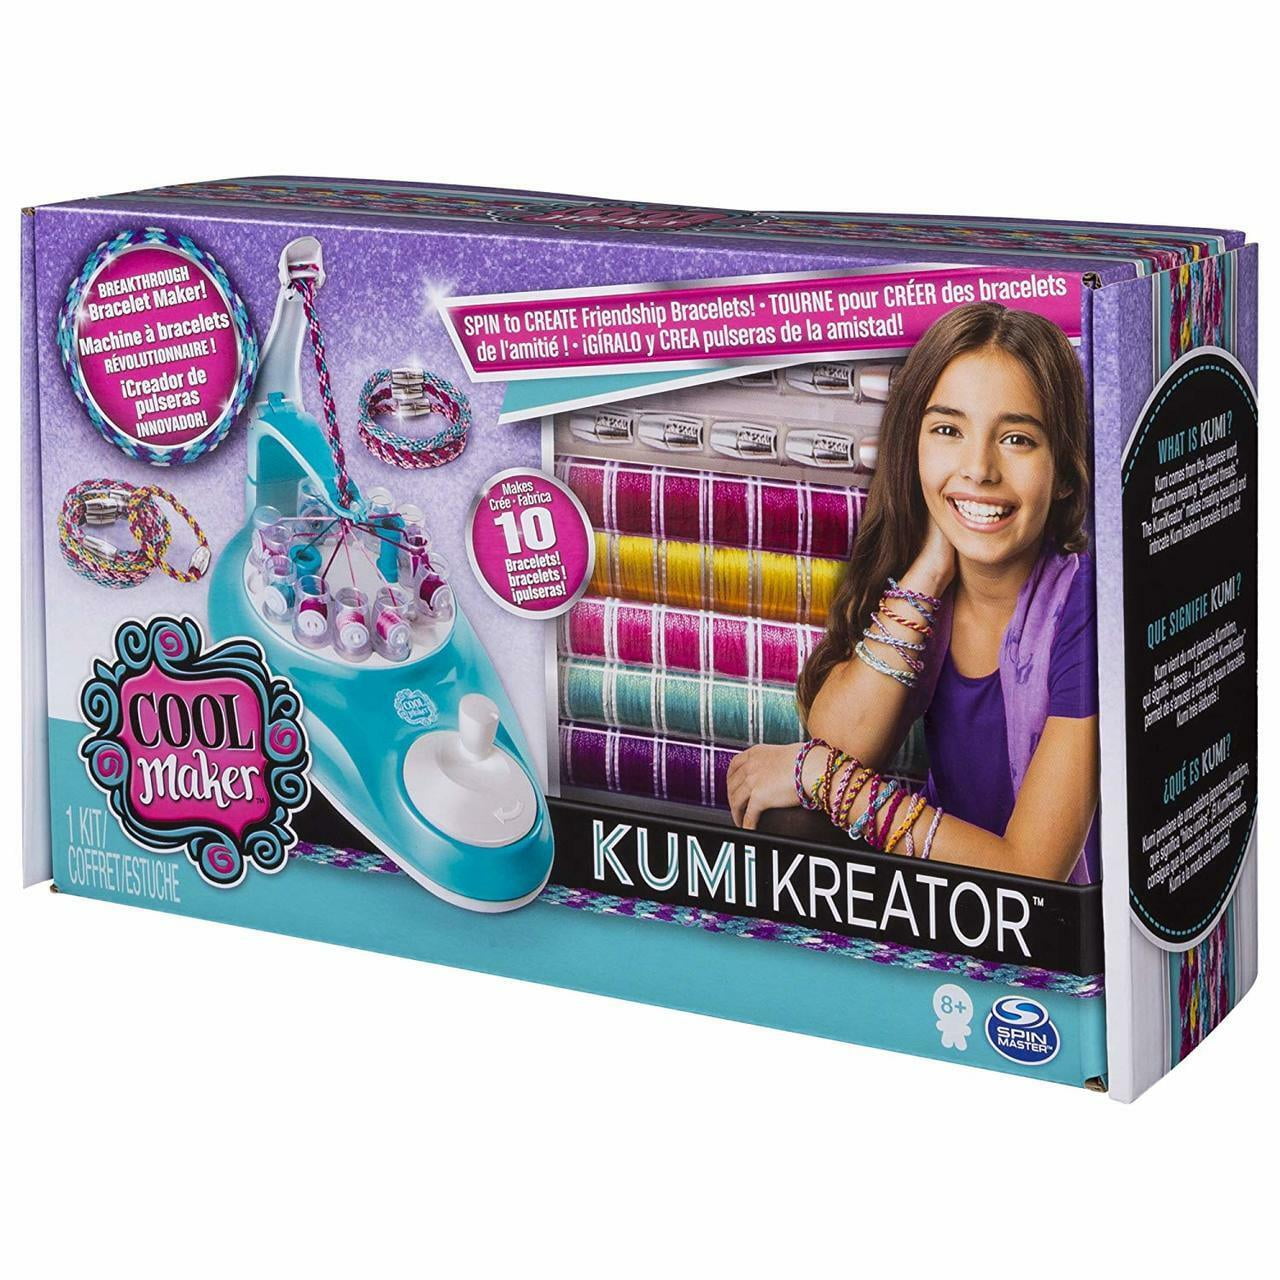 Cool Maker Kumi Kreator Fashion Pack Kumi Cools Refill Set - ToyWiz